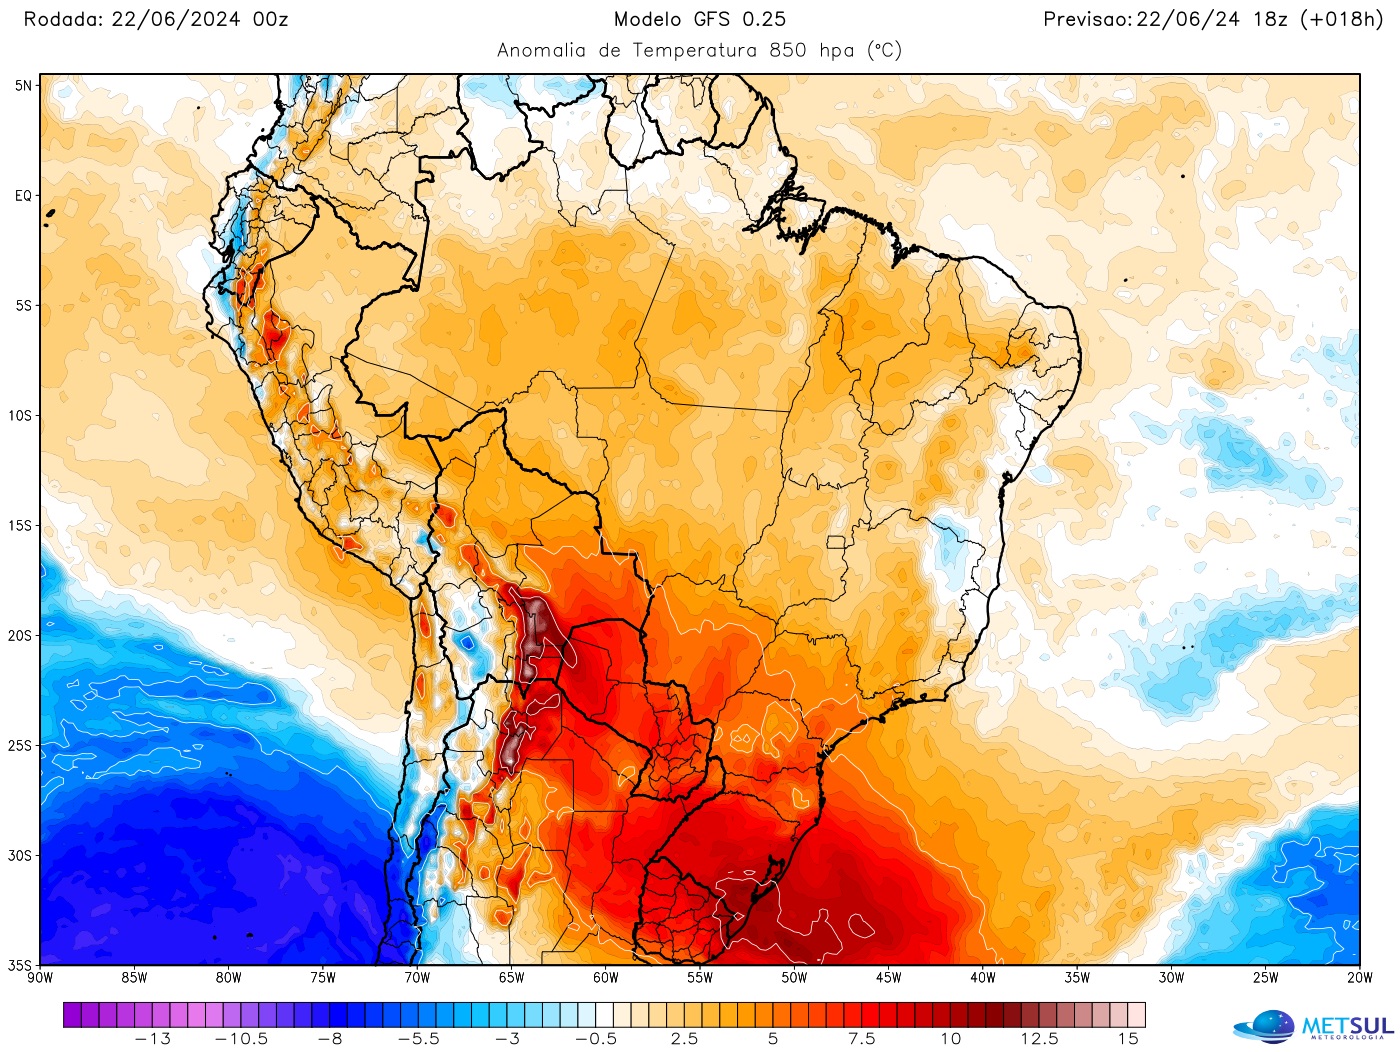 Clima e tempo no Brasil - Massa de ar quente cobre grande parte do Brasil neste fim de semana com calor do Norte ao Sul do país 